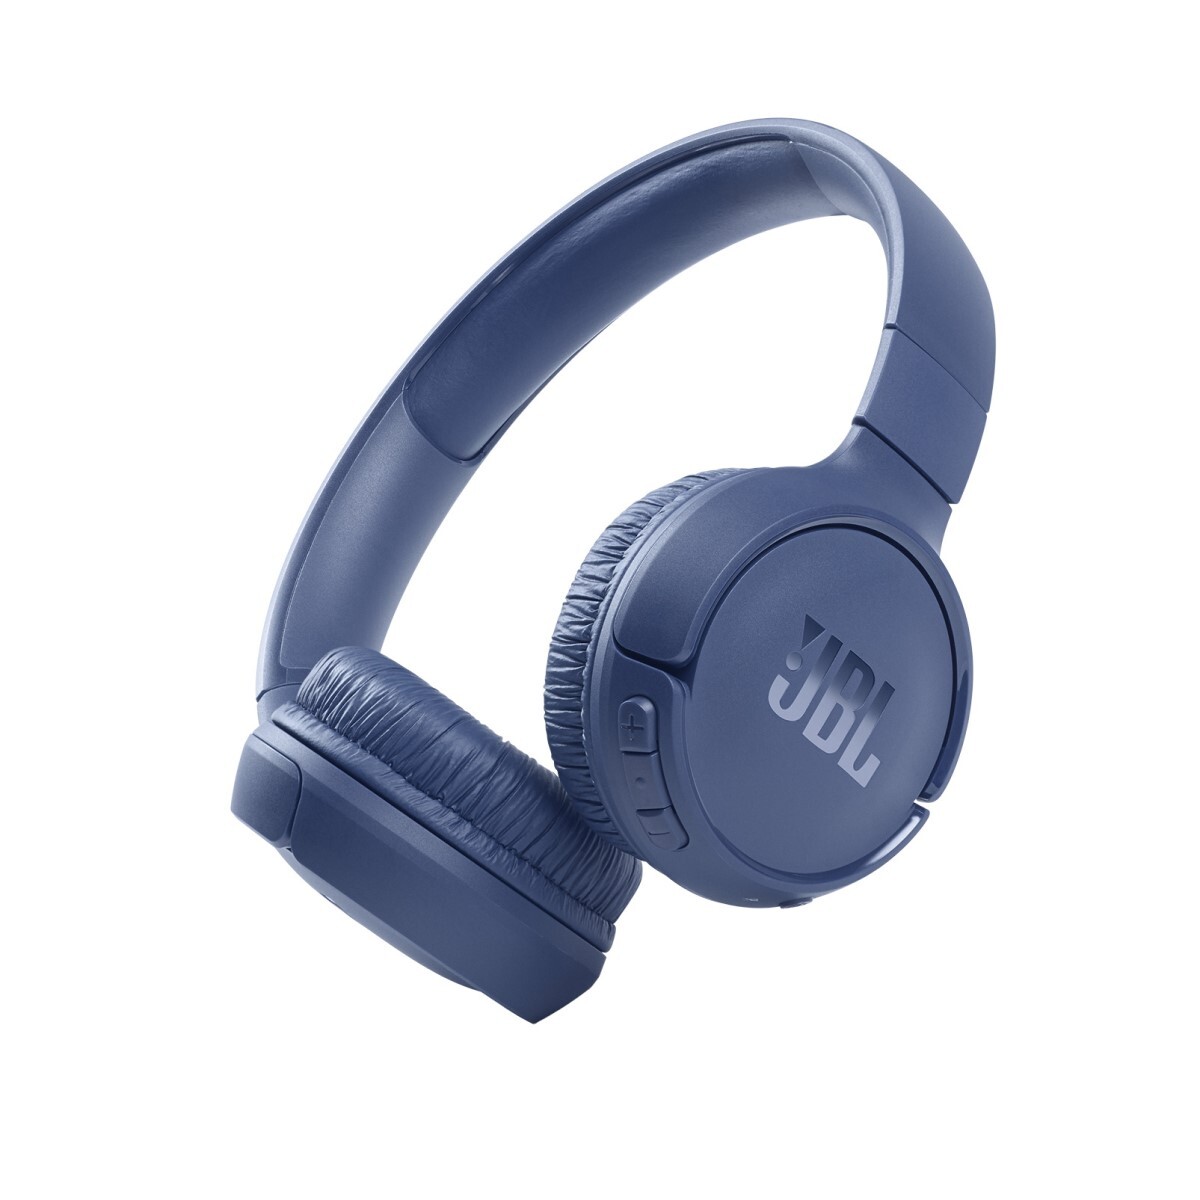 Jbl t510 auricular on-ear bluetooth - Azul 